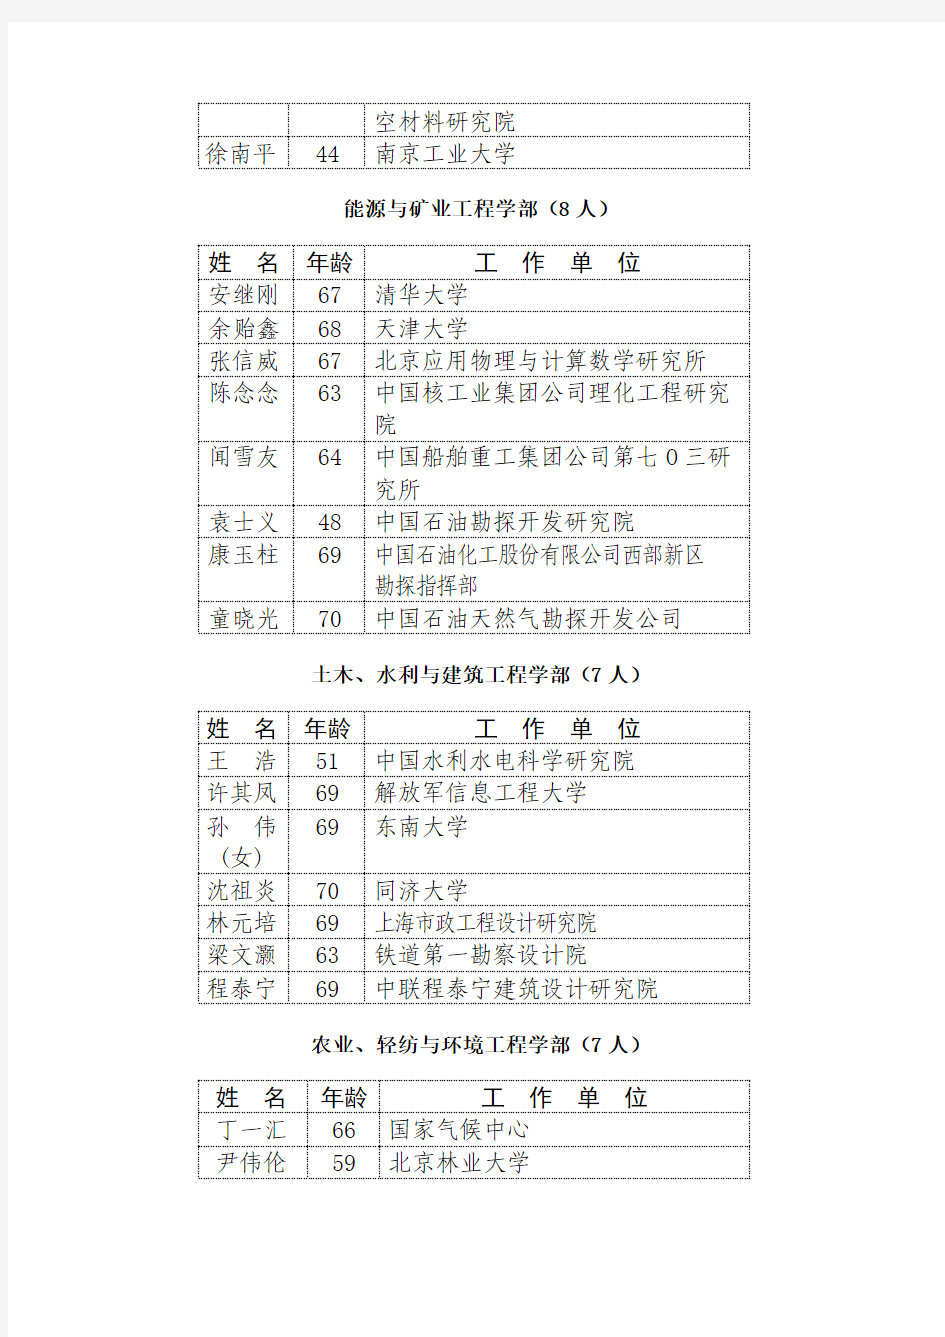 中国工程院2005年当选院士名单